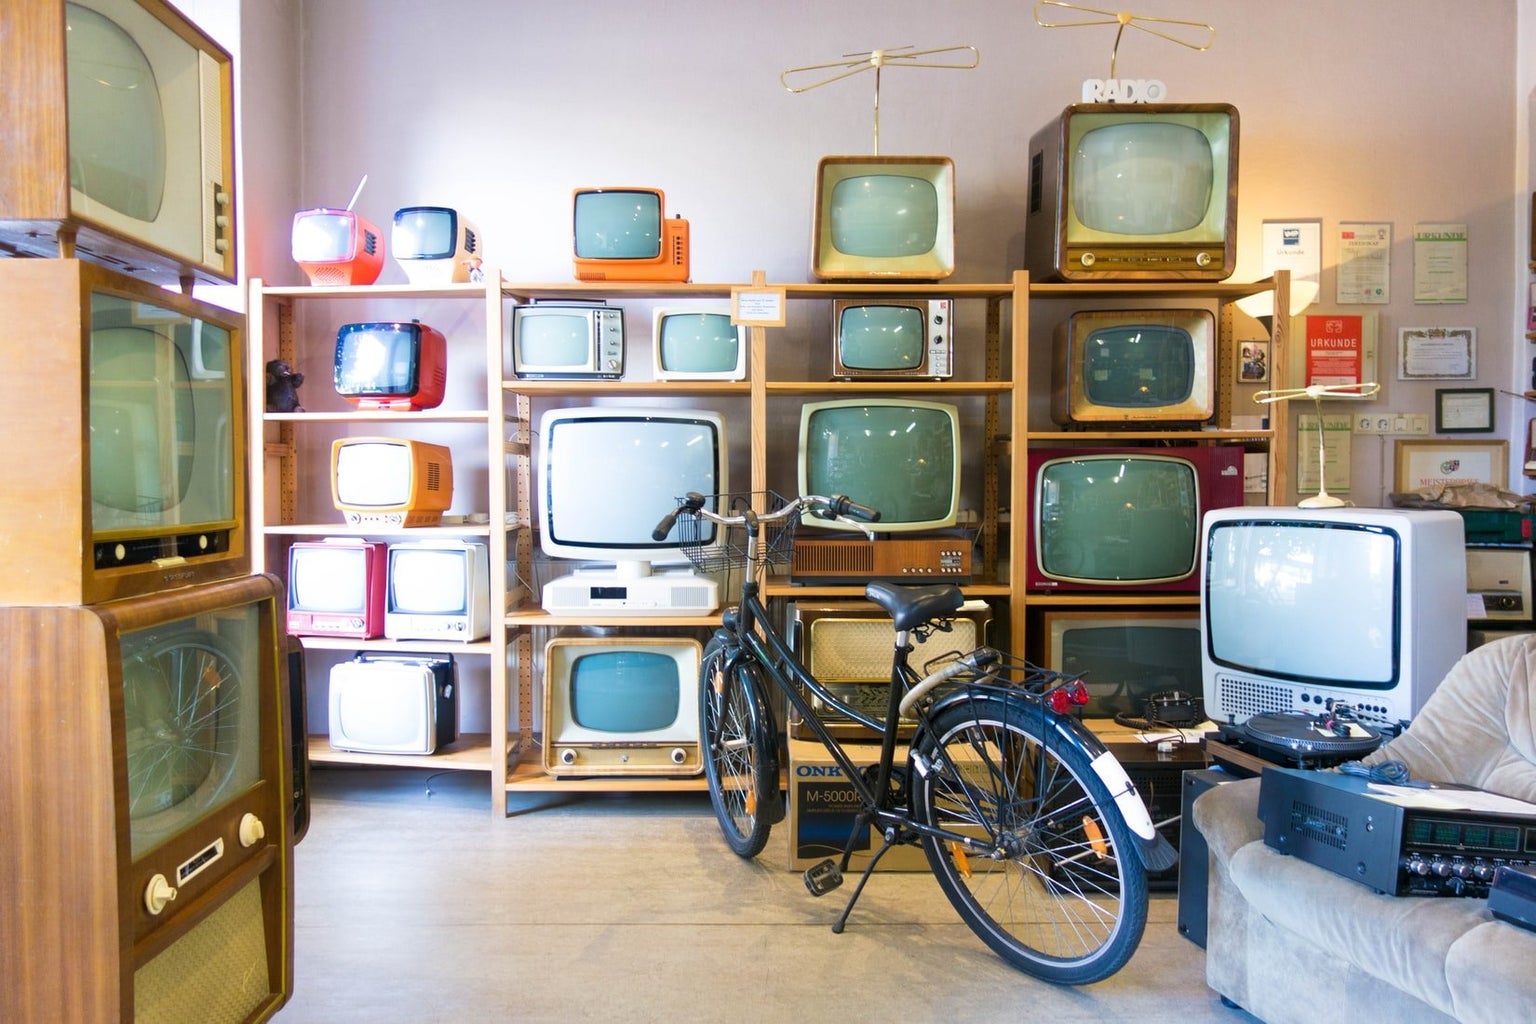 Many vintage tvs